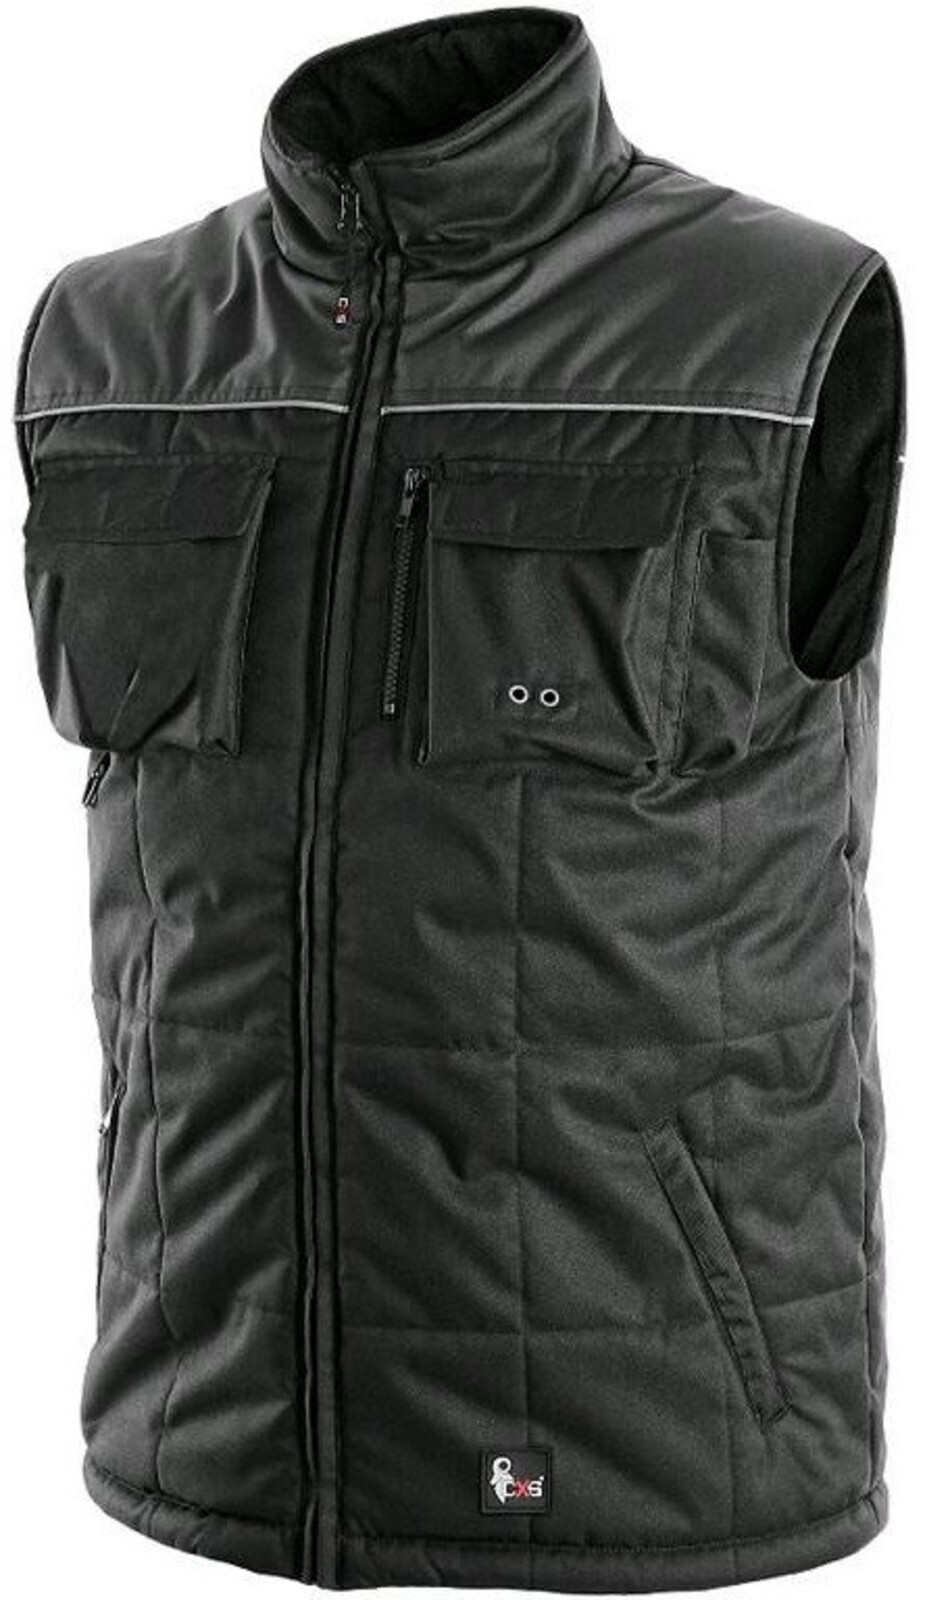 Pánska zateplená zimná vesta CXS Seattle - veľkosť: L, farba: čierna/sivá